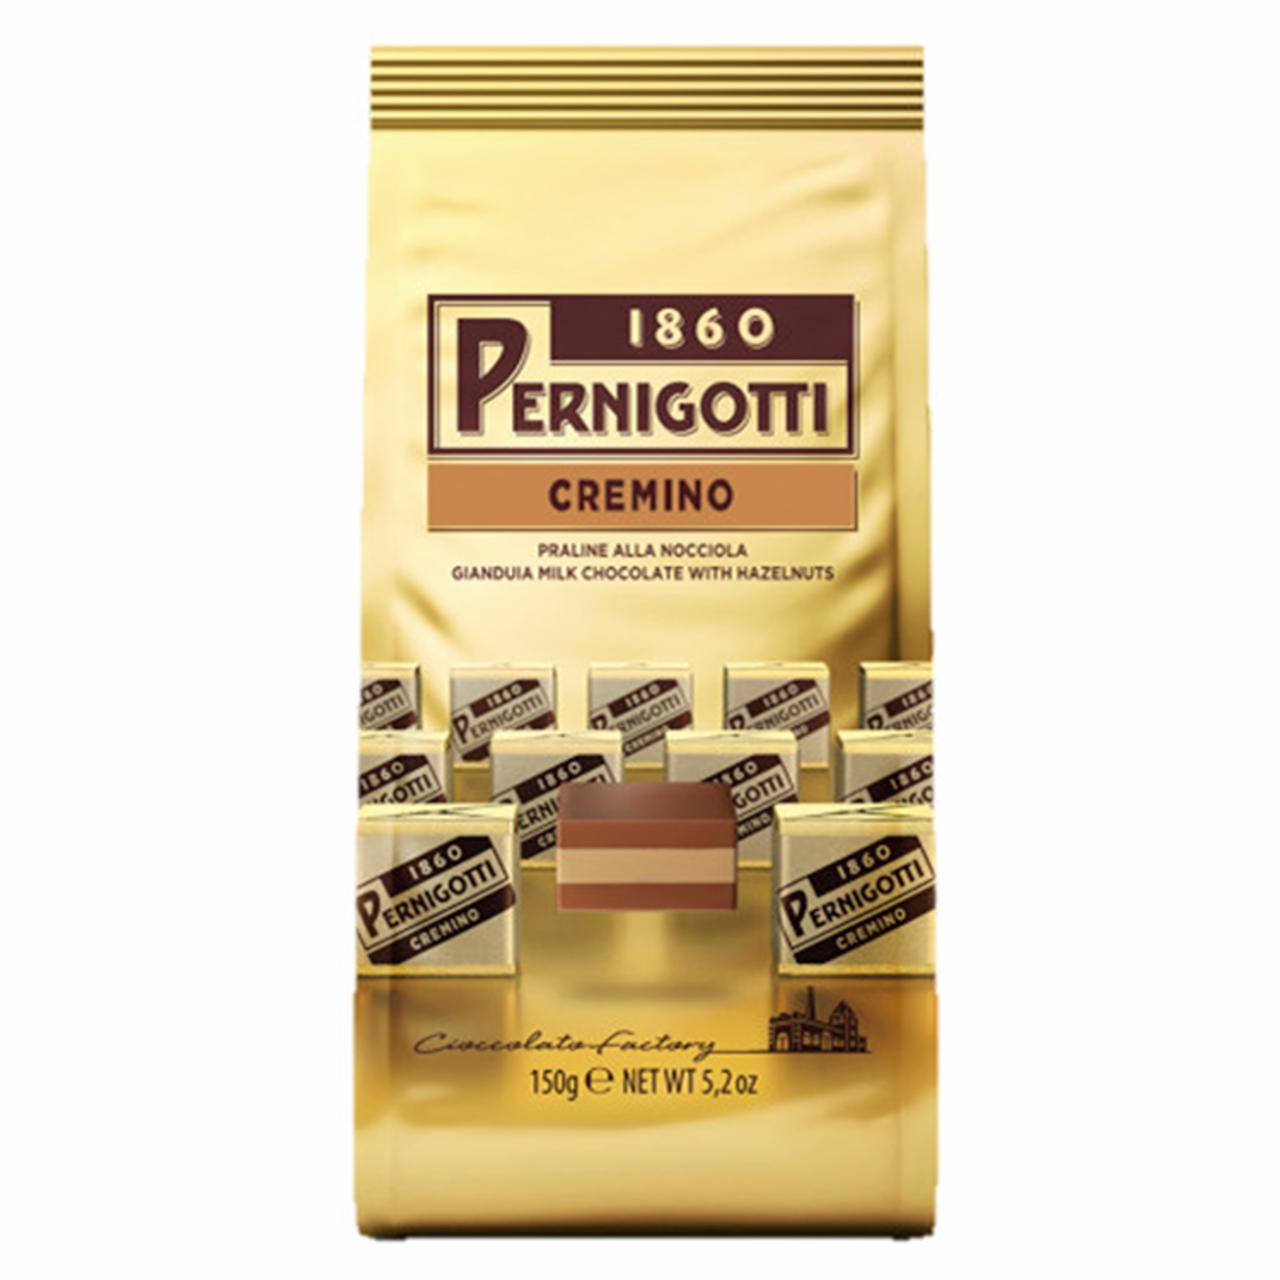 Képek - Pernigotti Cremino mogyorós gianduja tejcsokoládé praliné mogyorókrémmel töltve 150 g